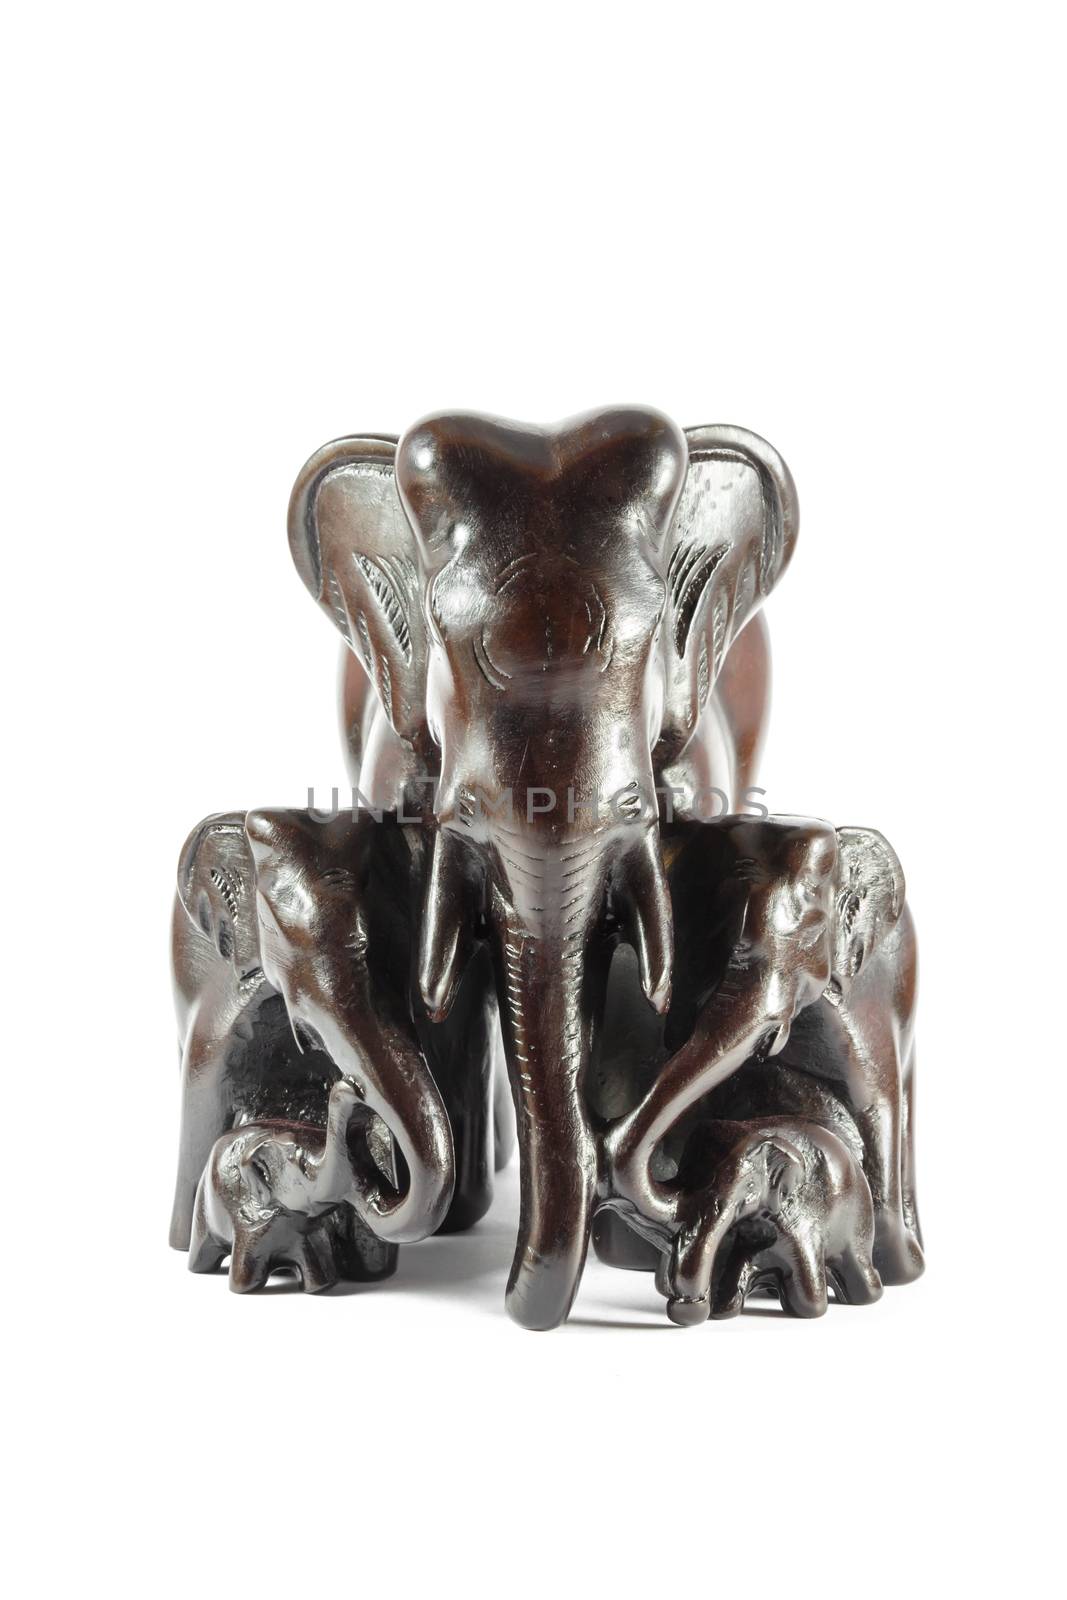 model of thai elephant's family by stockdevil